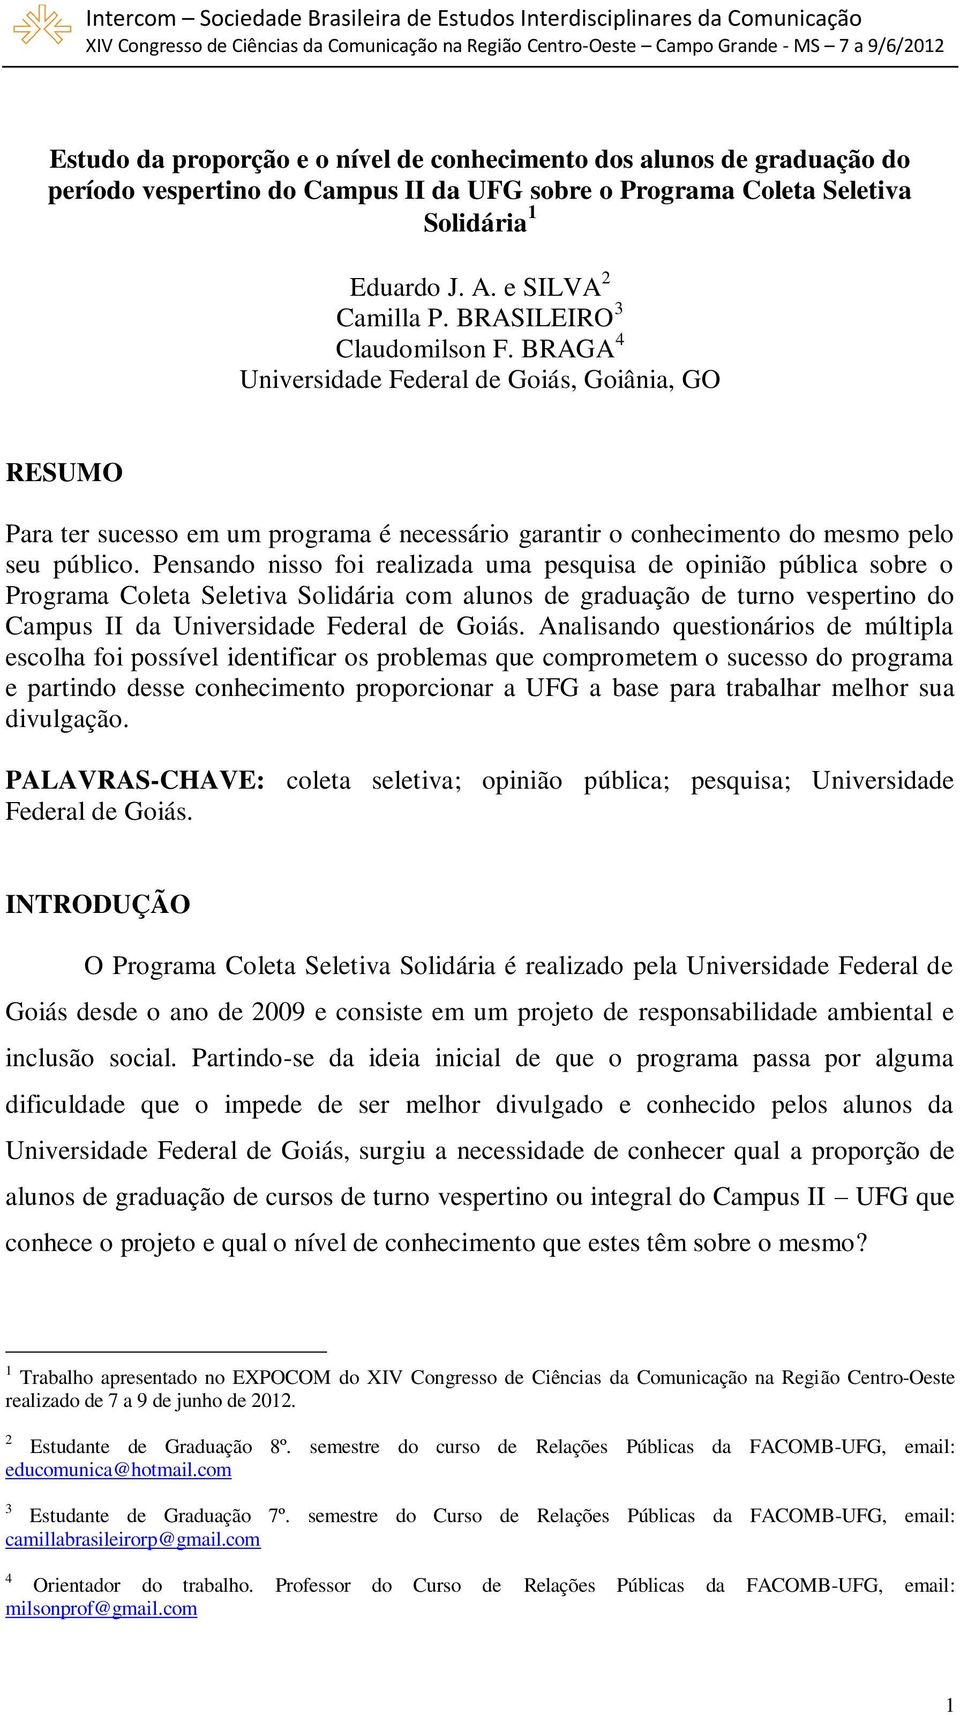 Pensando nisso foi realizada uma pesquisa de opinião pública sobre o Programa Coleta Seletiva Solidária com alunos de graduação de turno vespertino do Campus II da Universidade Federal de Goiás.